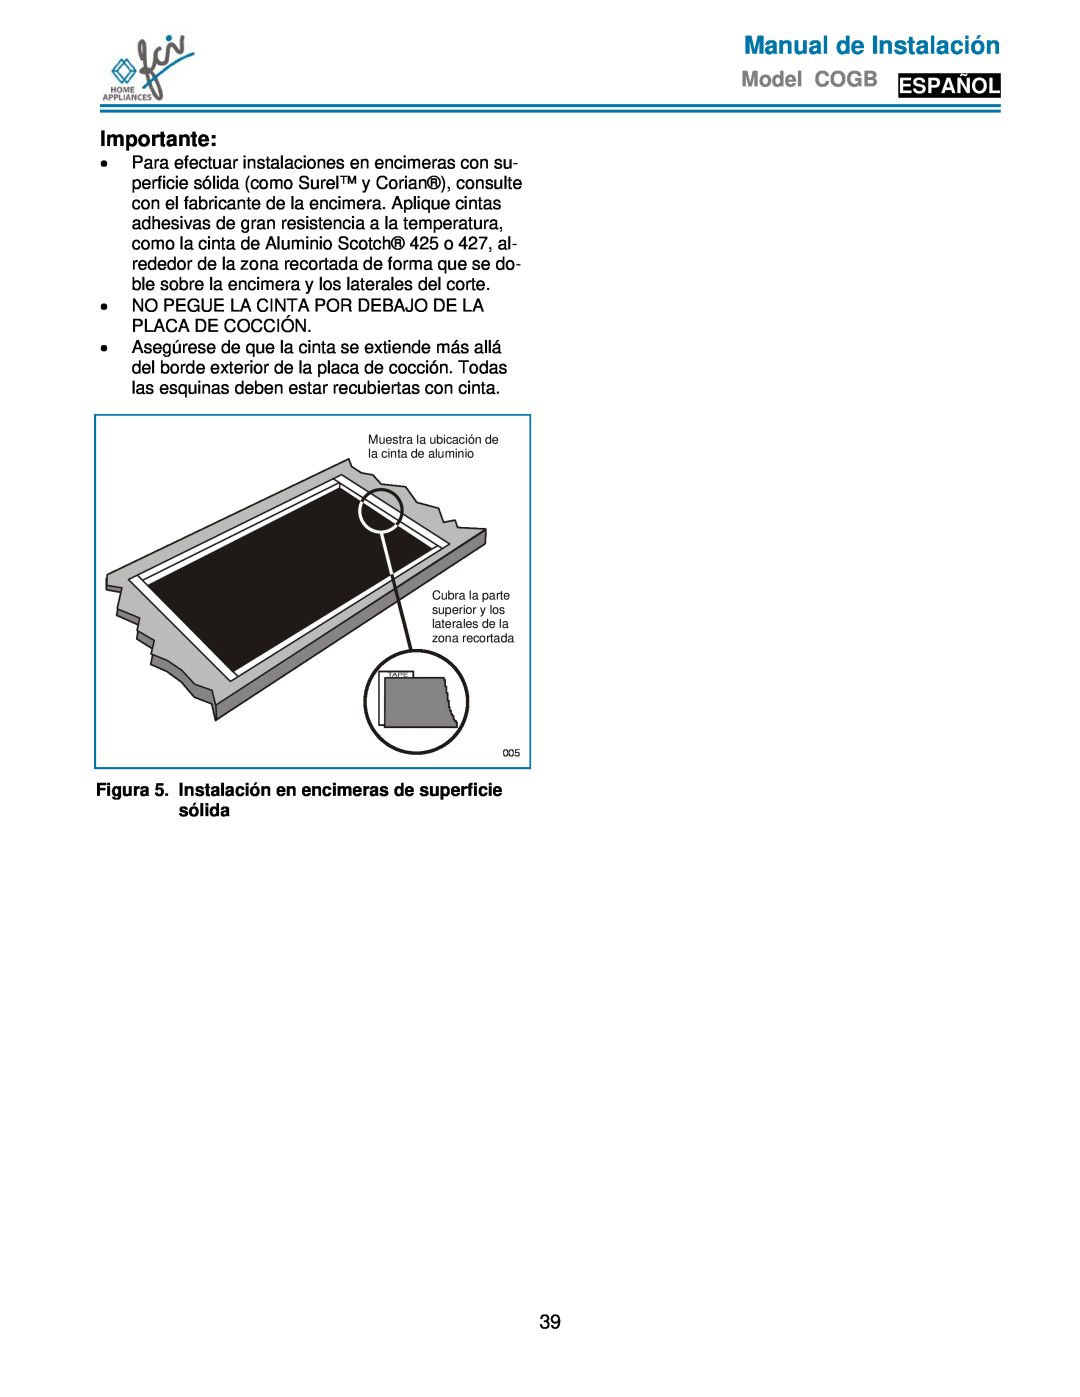 FCI Home Appliances COGB33061/WH Figura 5. Instalación en encimeras de superficie sólida, Manual de Instalación 